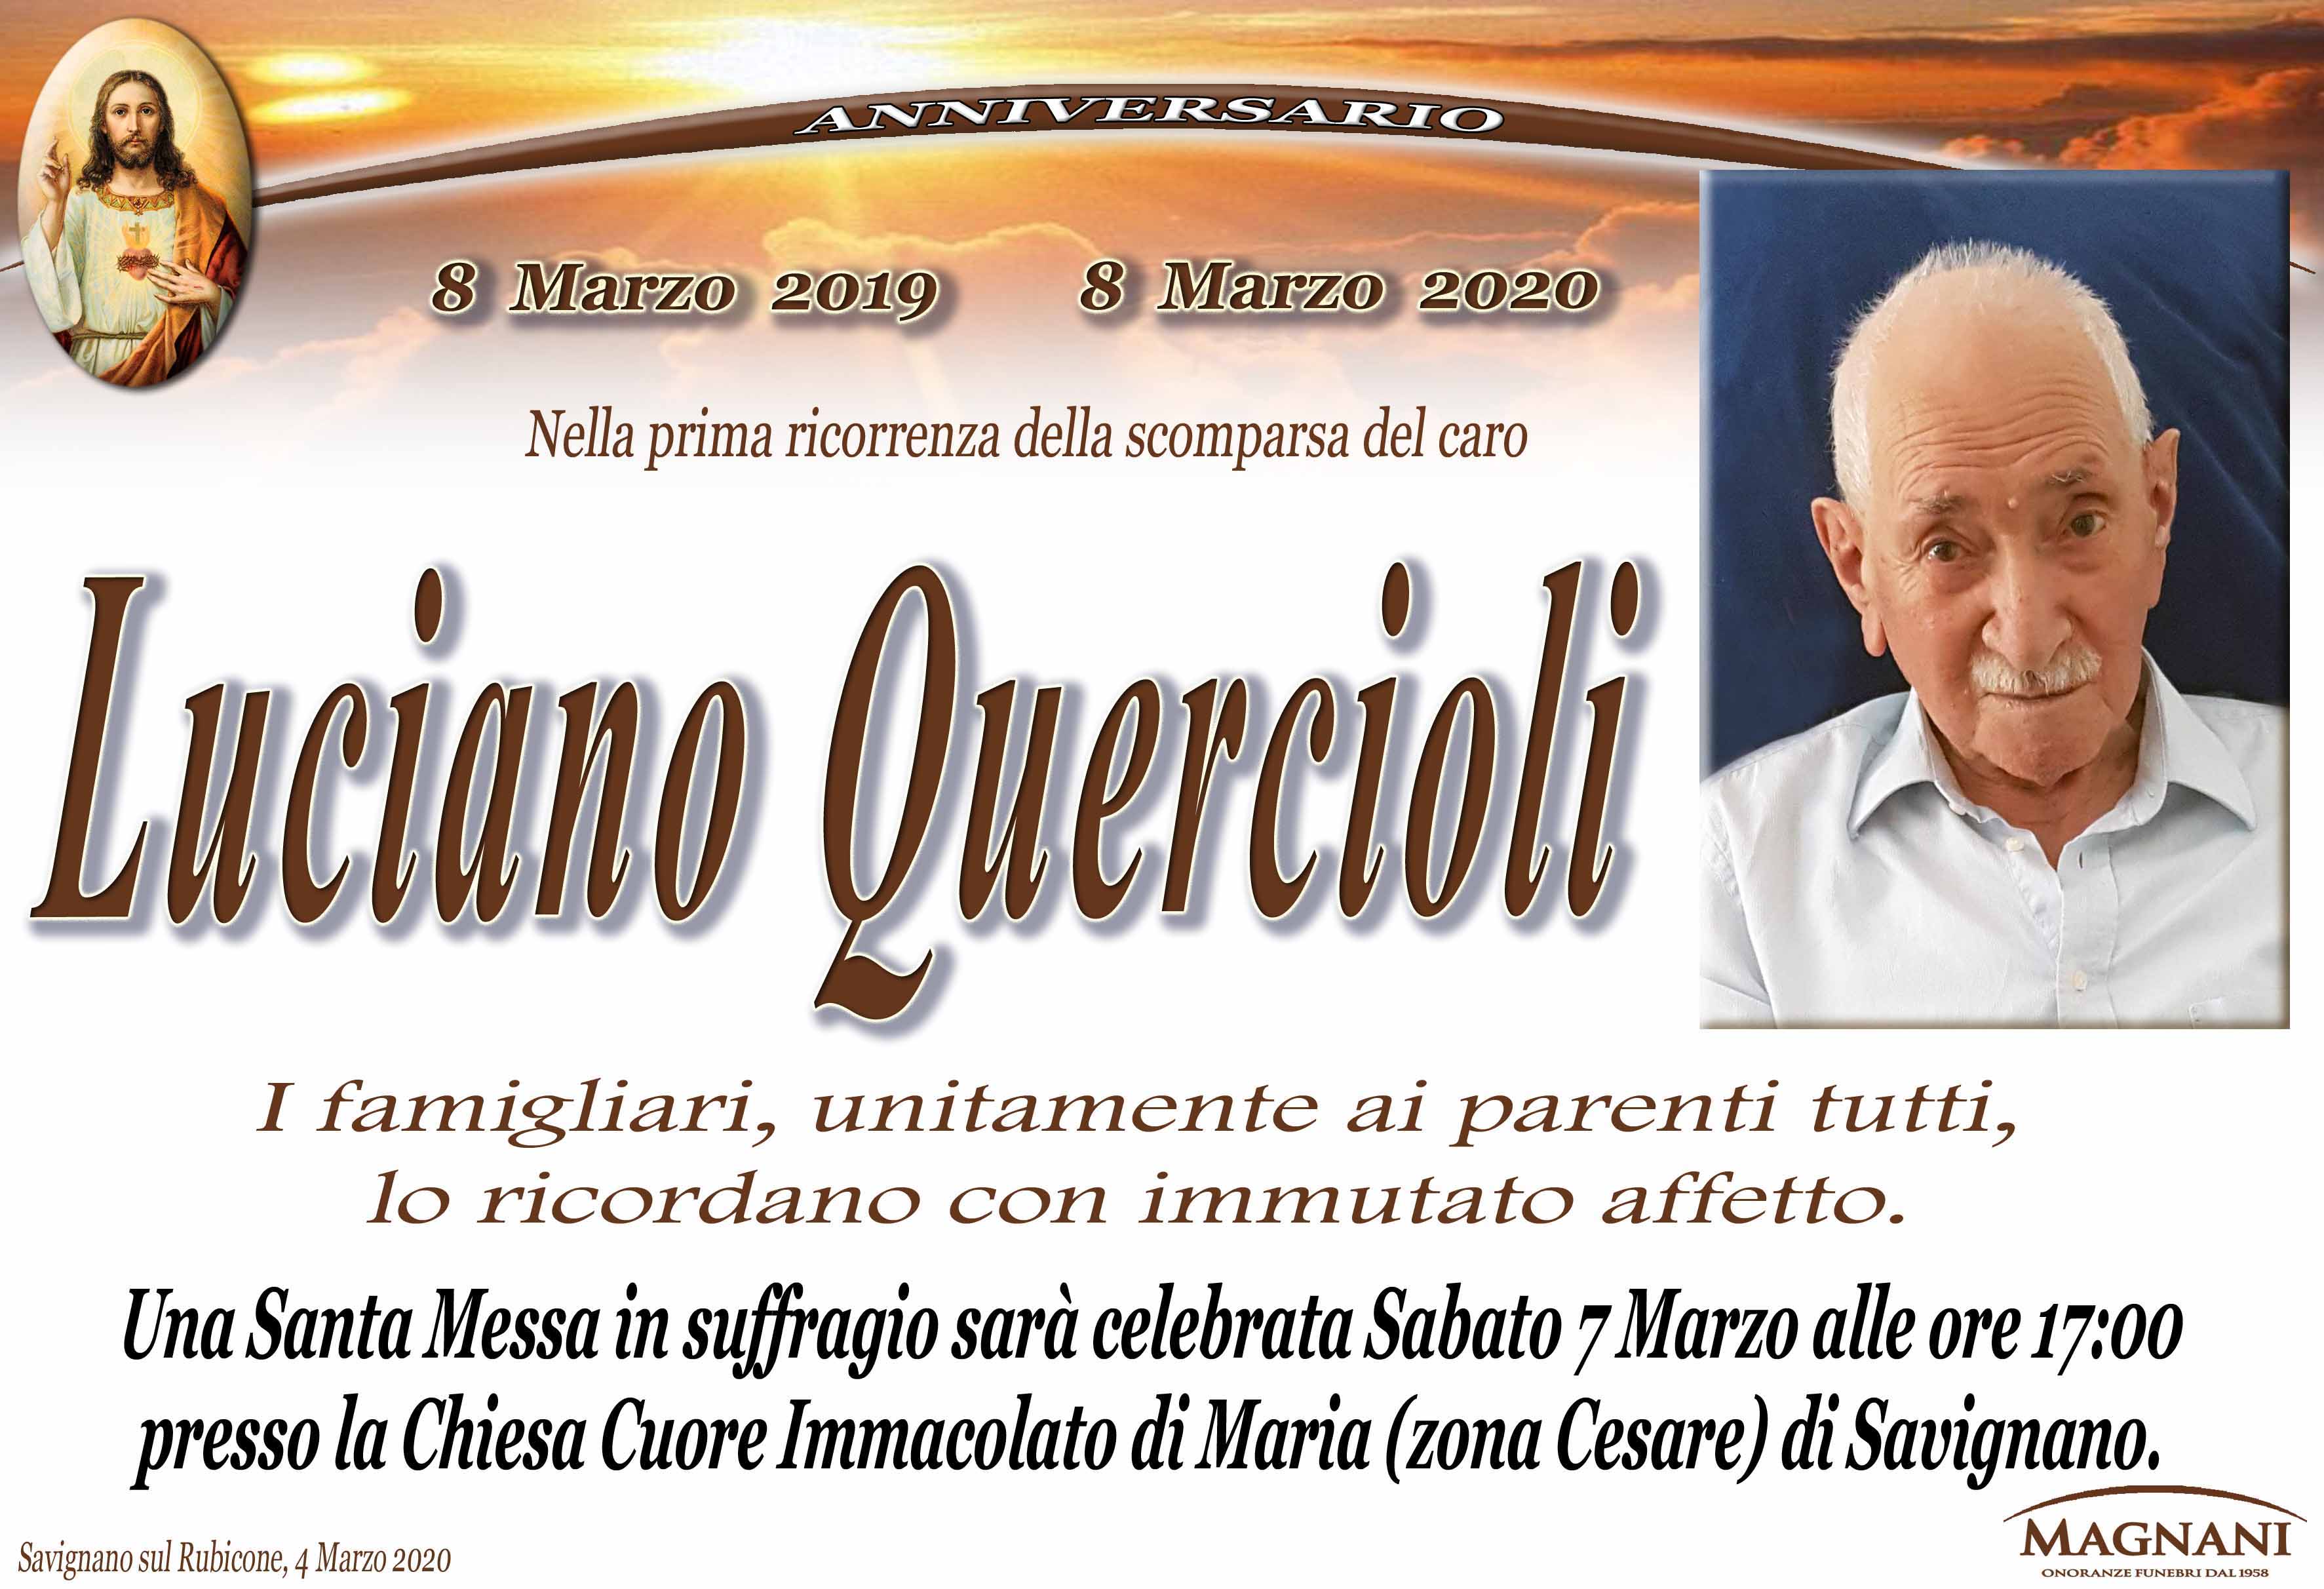 Luciano Quericioli